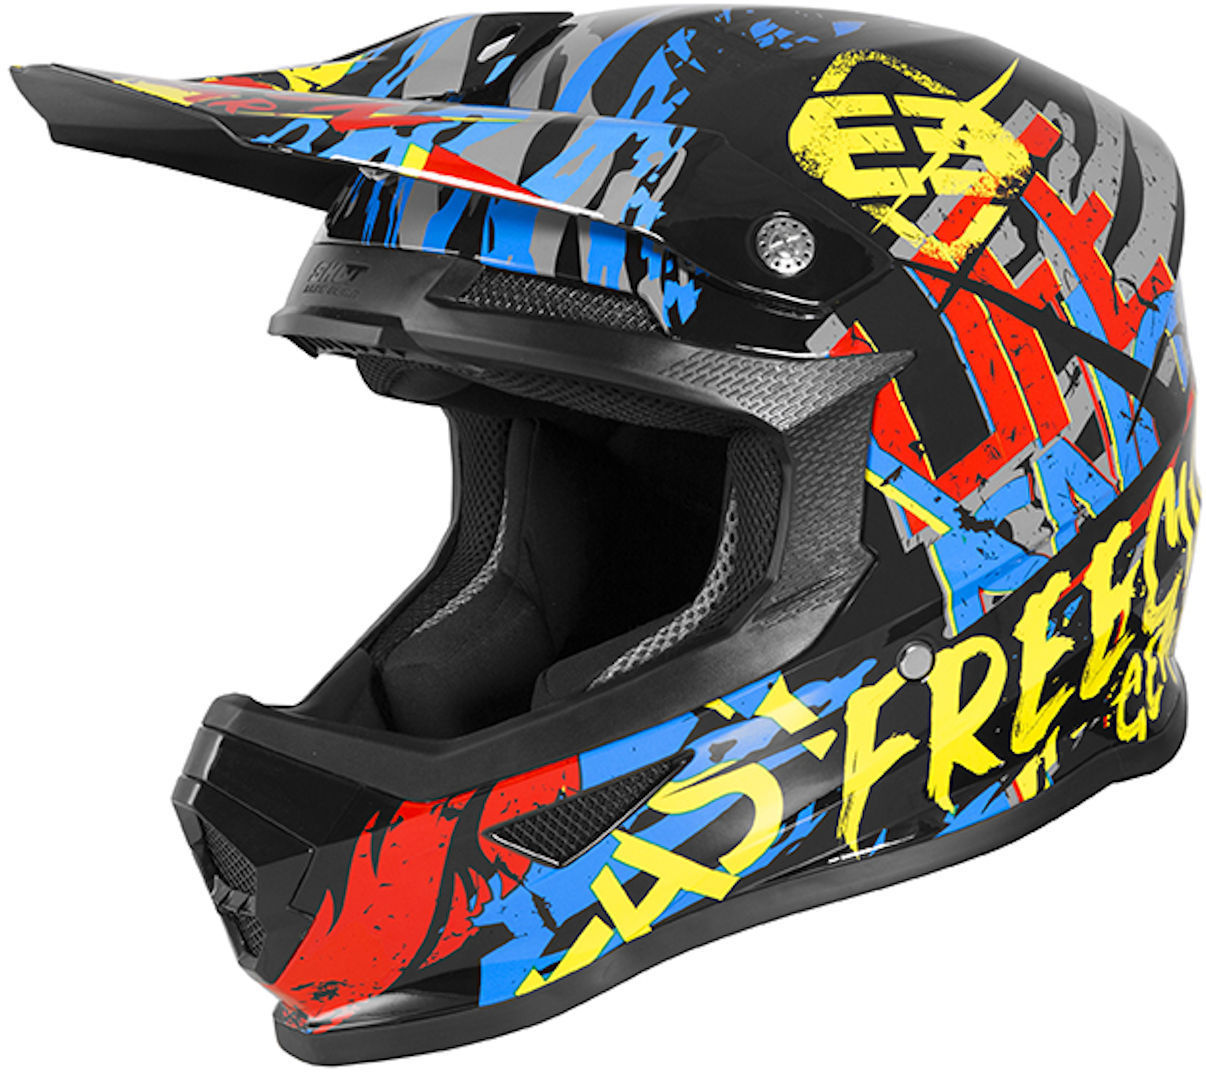 Шлем Freegun XP4 Maniac для мотокросса, черный/желтый/красный шлем freegun xp4 maniac для мотокросса черный желтый красный